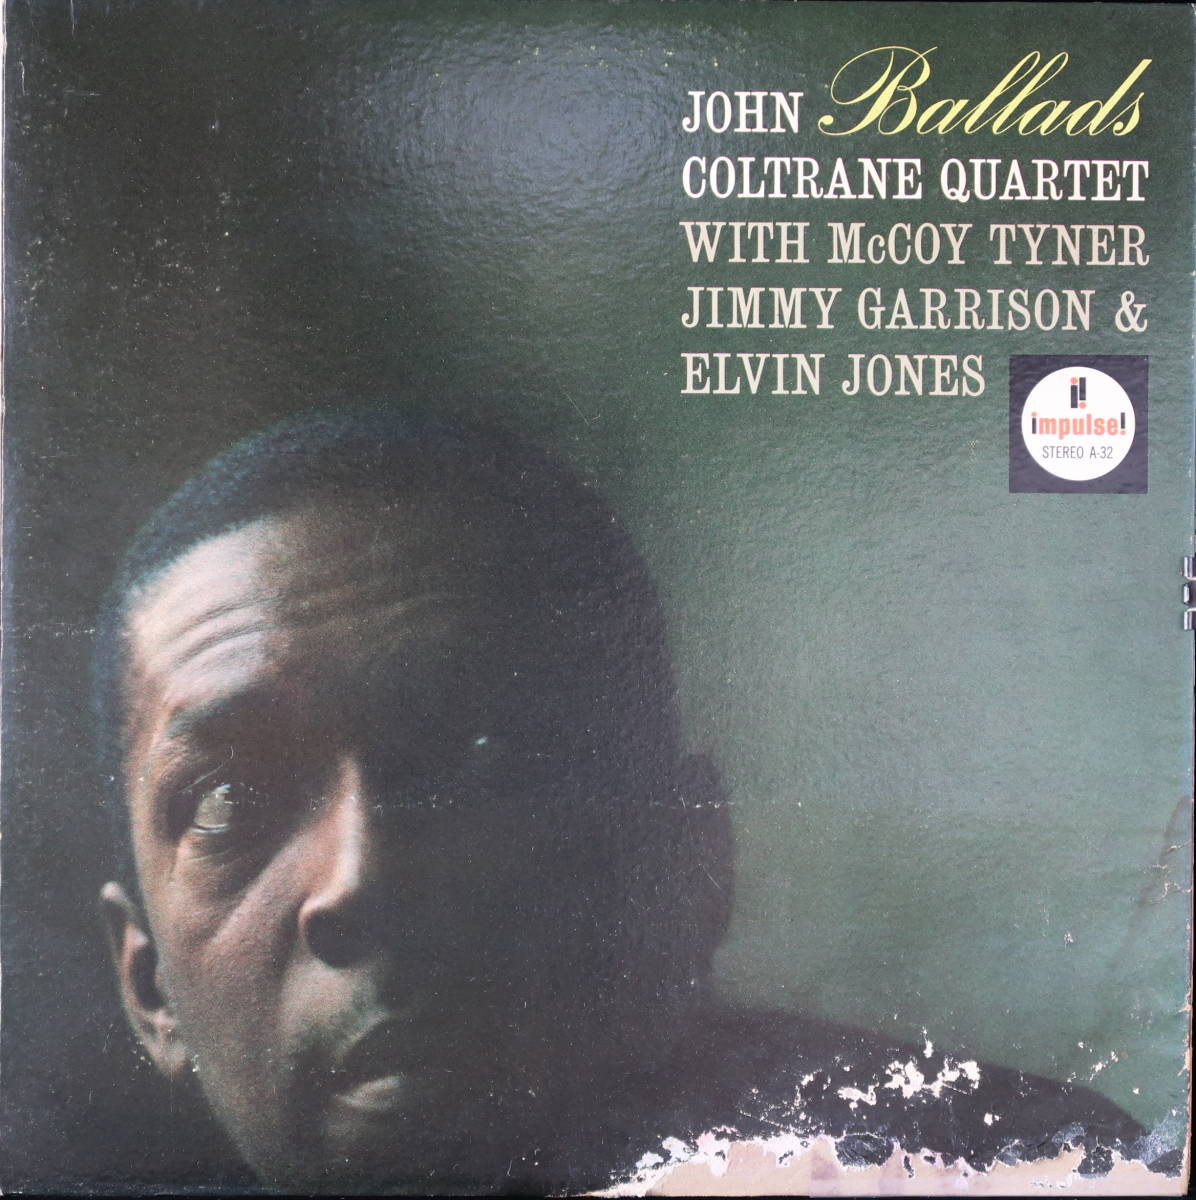 品質満点 [US.盤] :Ballads QUARTET COLTRANE JOHN ジャズ一般